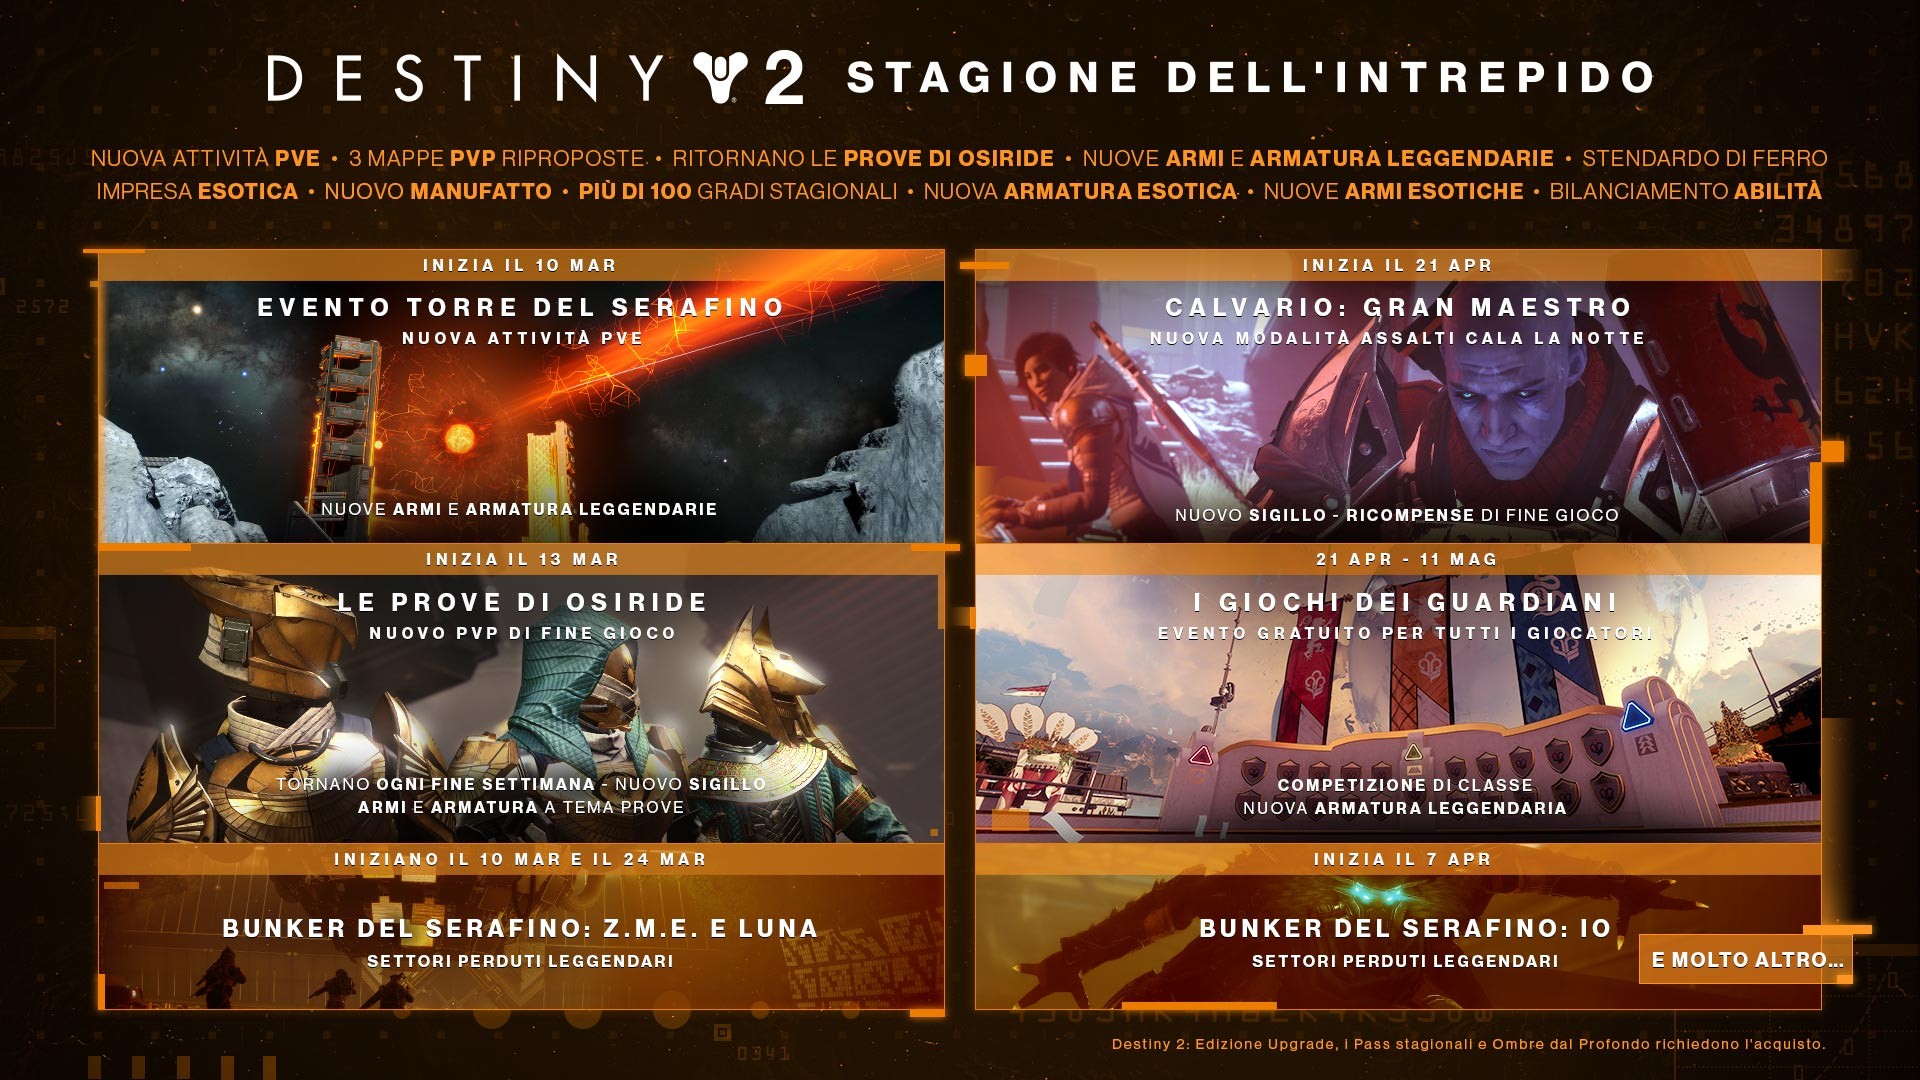 Le caratteristiche della Stagione dell'Intrepido in Destiny 2